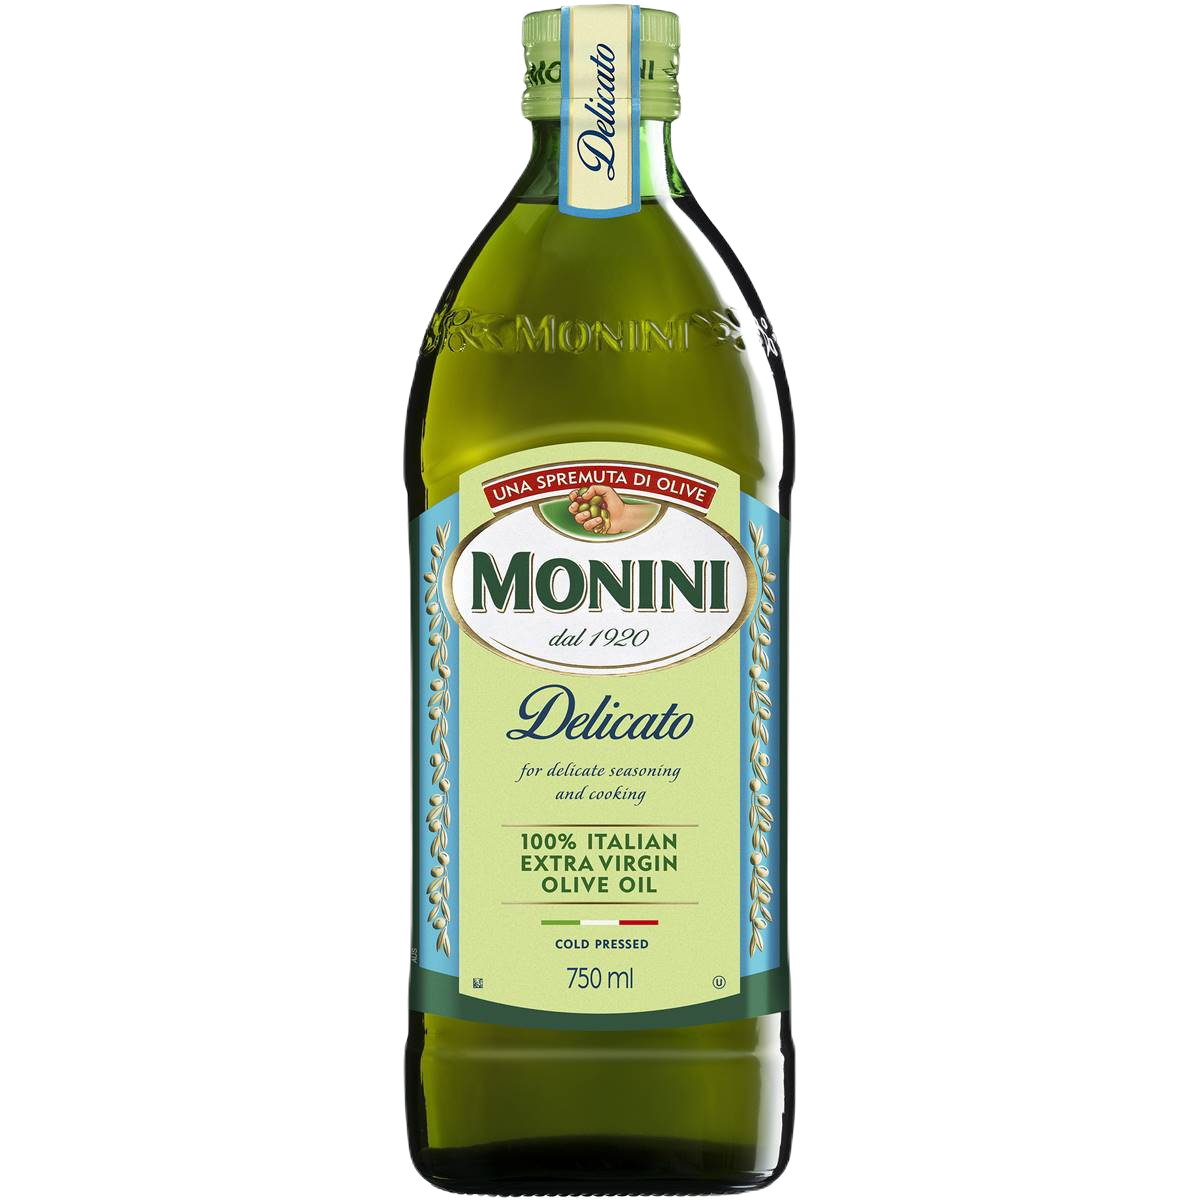 Bottle of Monini branded Extra Virgin Olive Oil